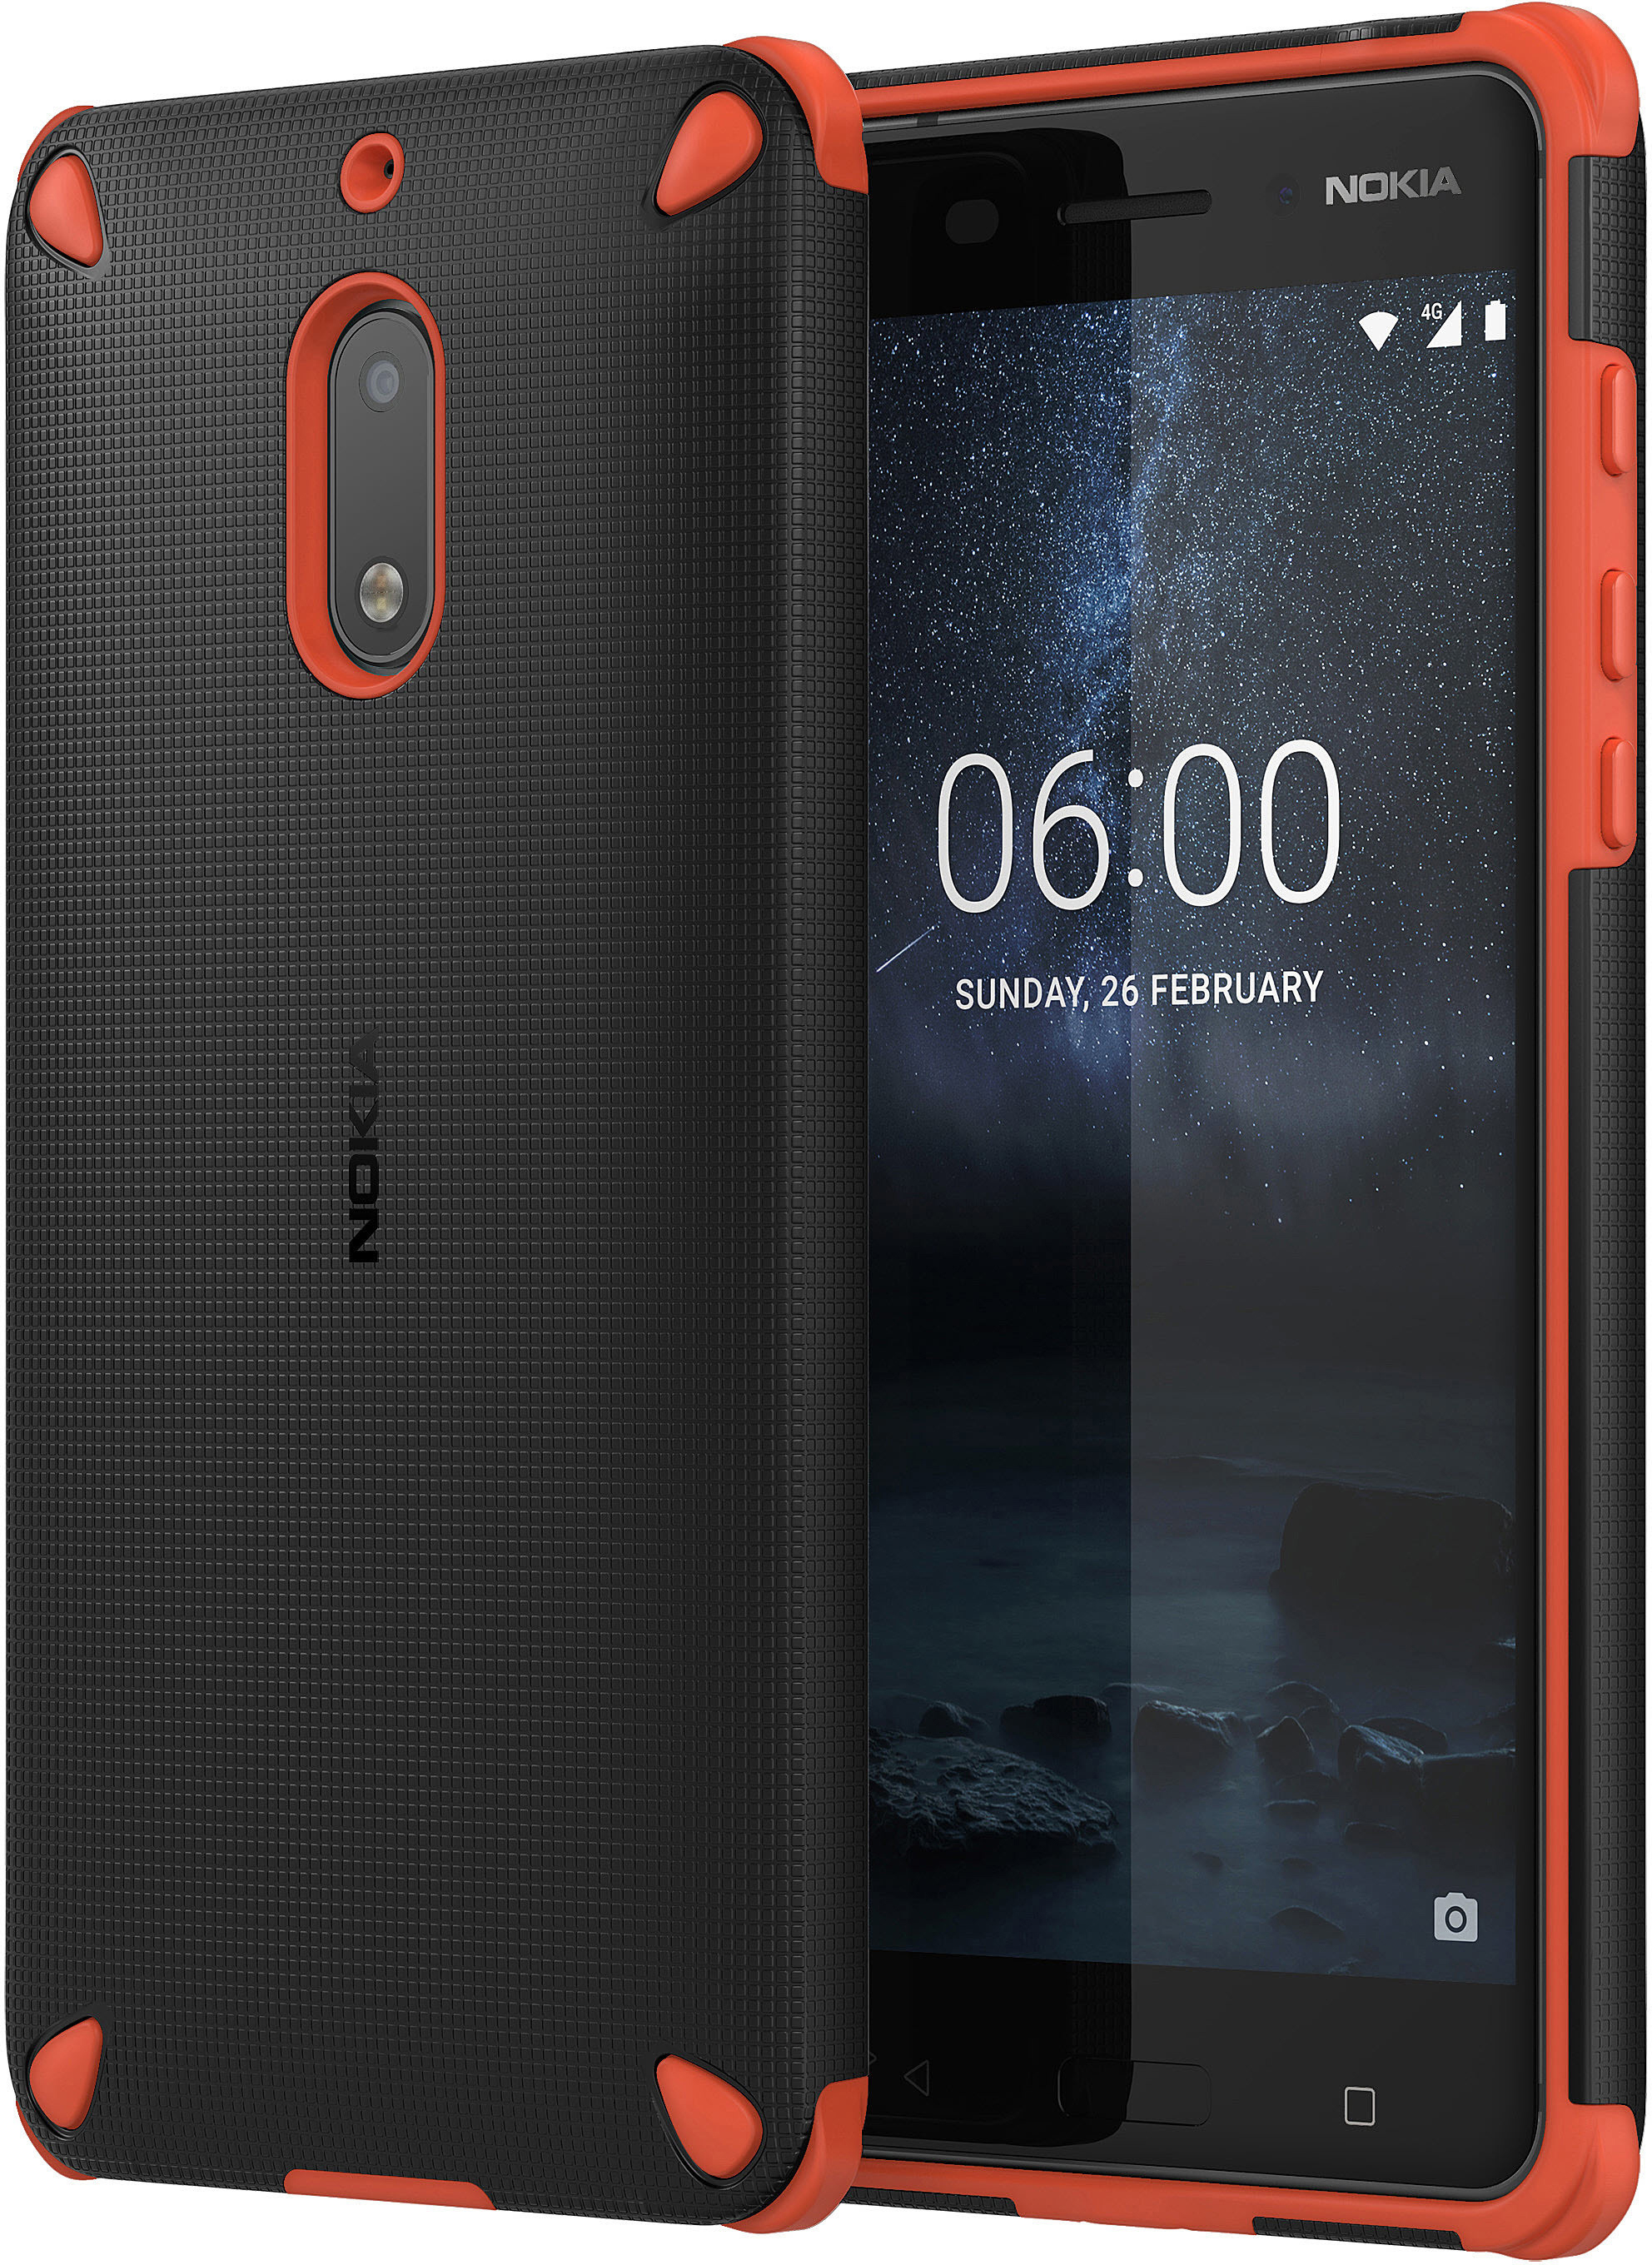 Case Impact NOKIA Nokia, 6, Orange Rugged CC-501, Backcover,